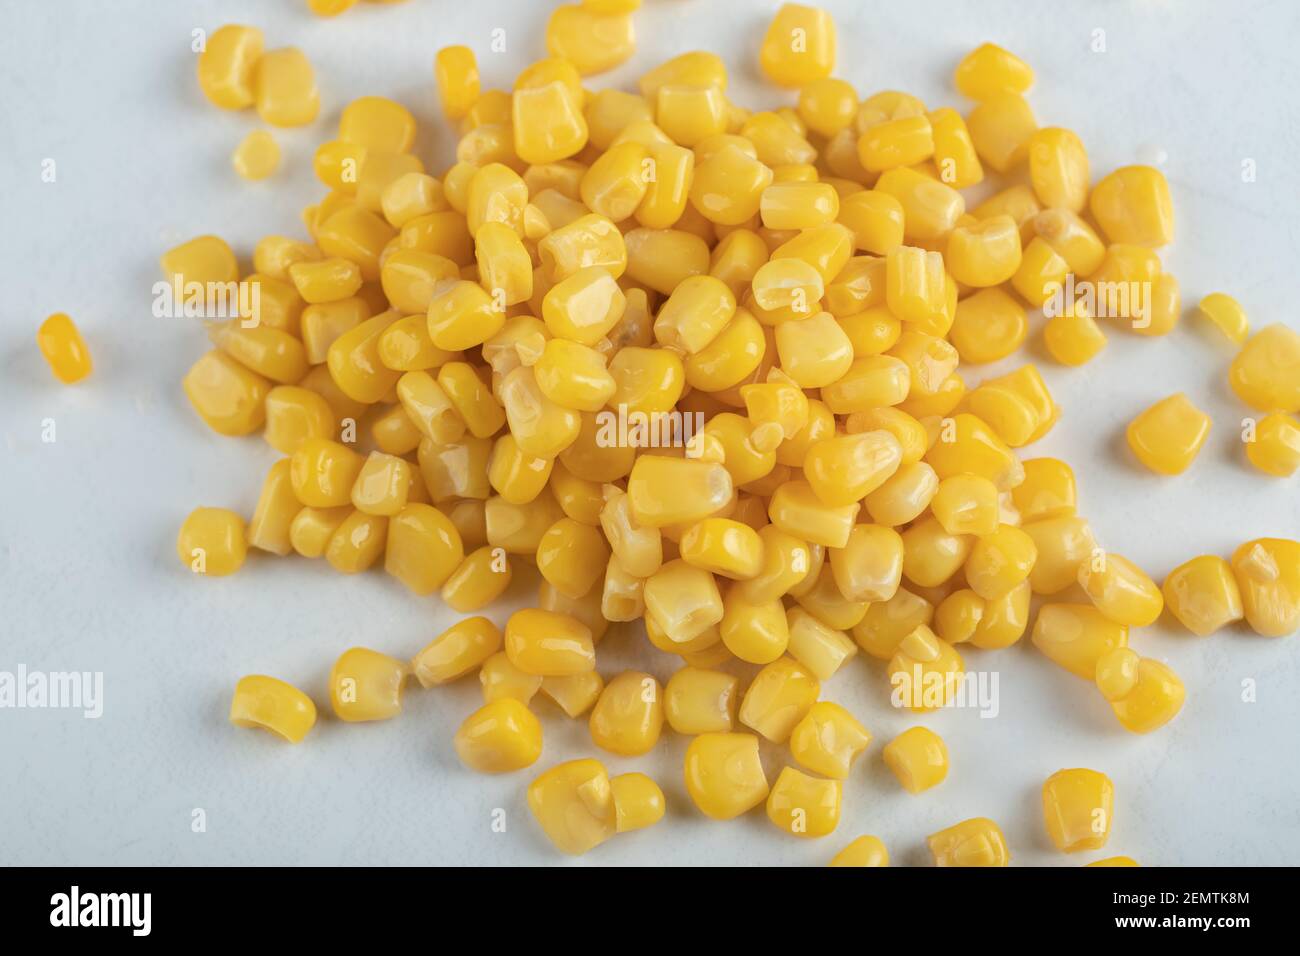 Vue de dessus des graines de maïs en conserve sur fond blanc Banque D'Images